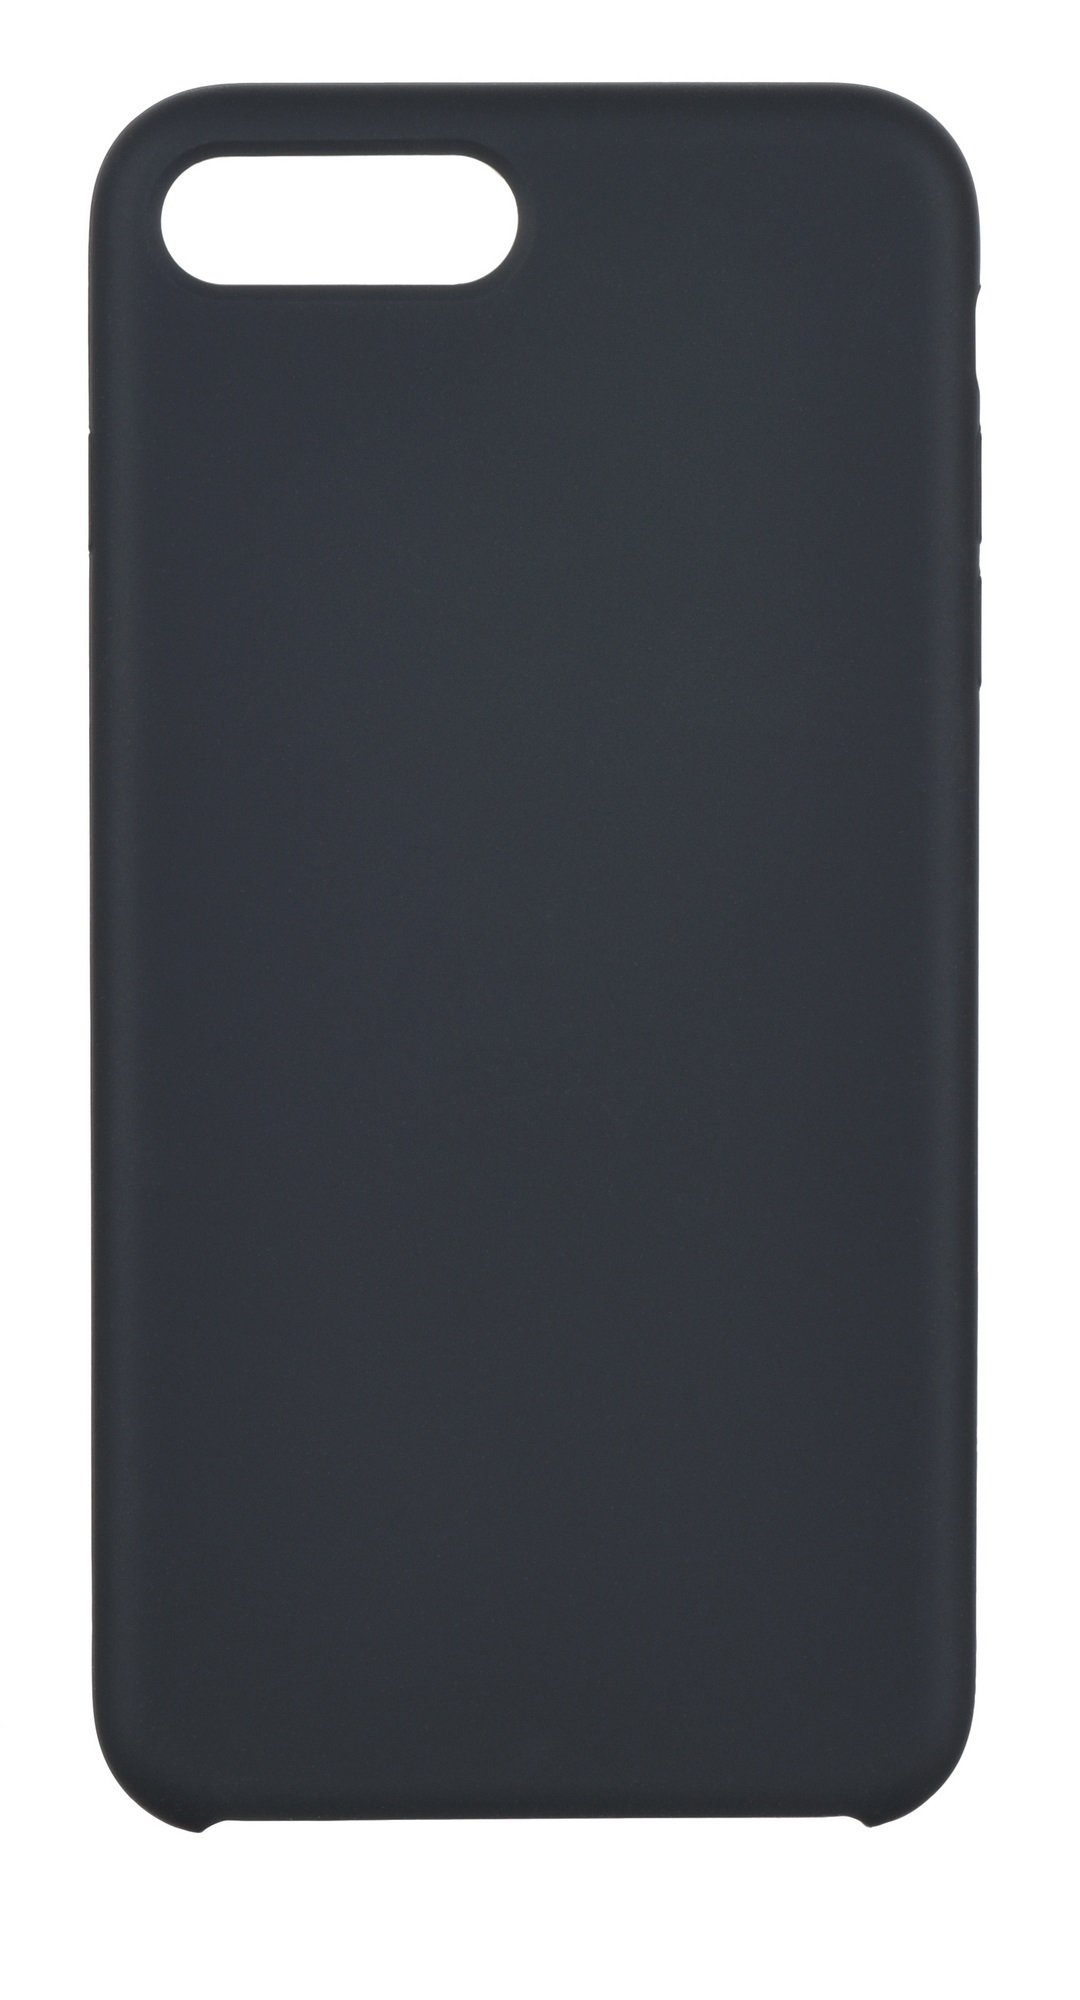 Акция на 2Е для Apple iPhone 7/8 Plus Liquid Silicone Carbon Grey (2E-IPH-7/8P-NKSLS-CG) от Repka